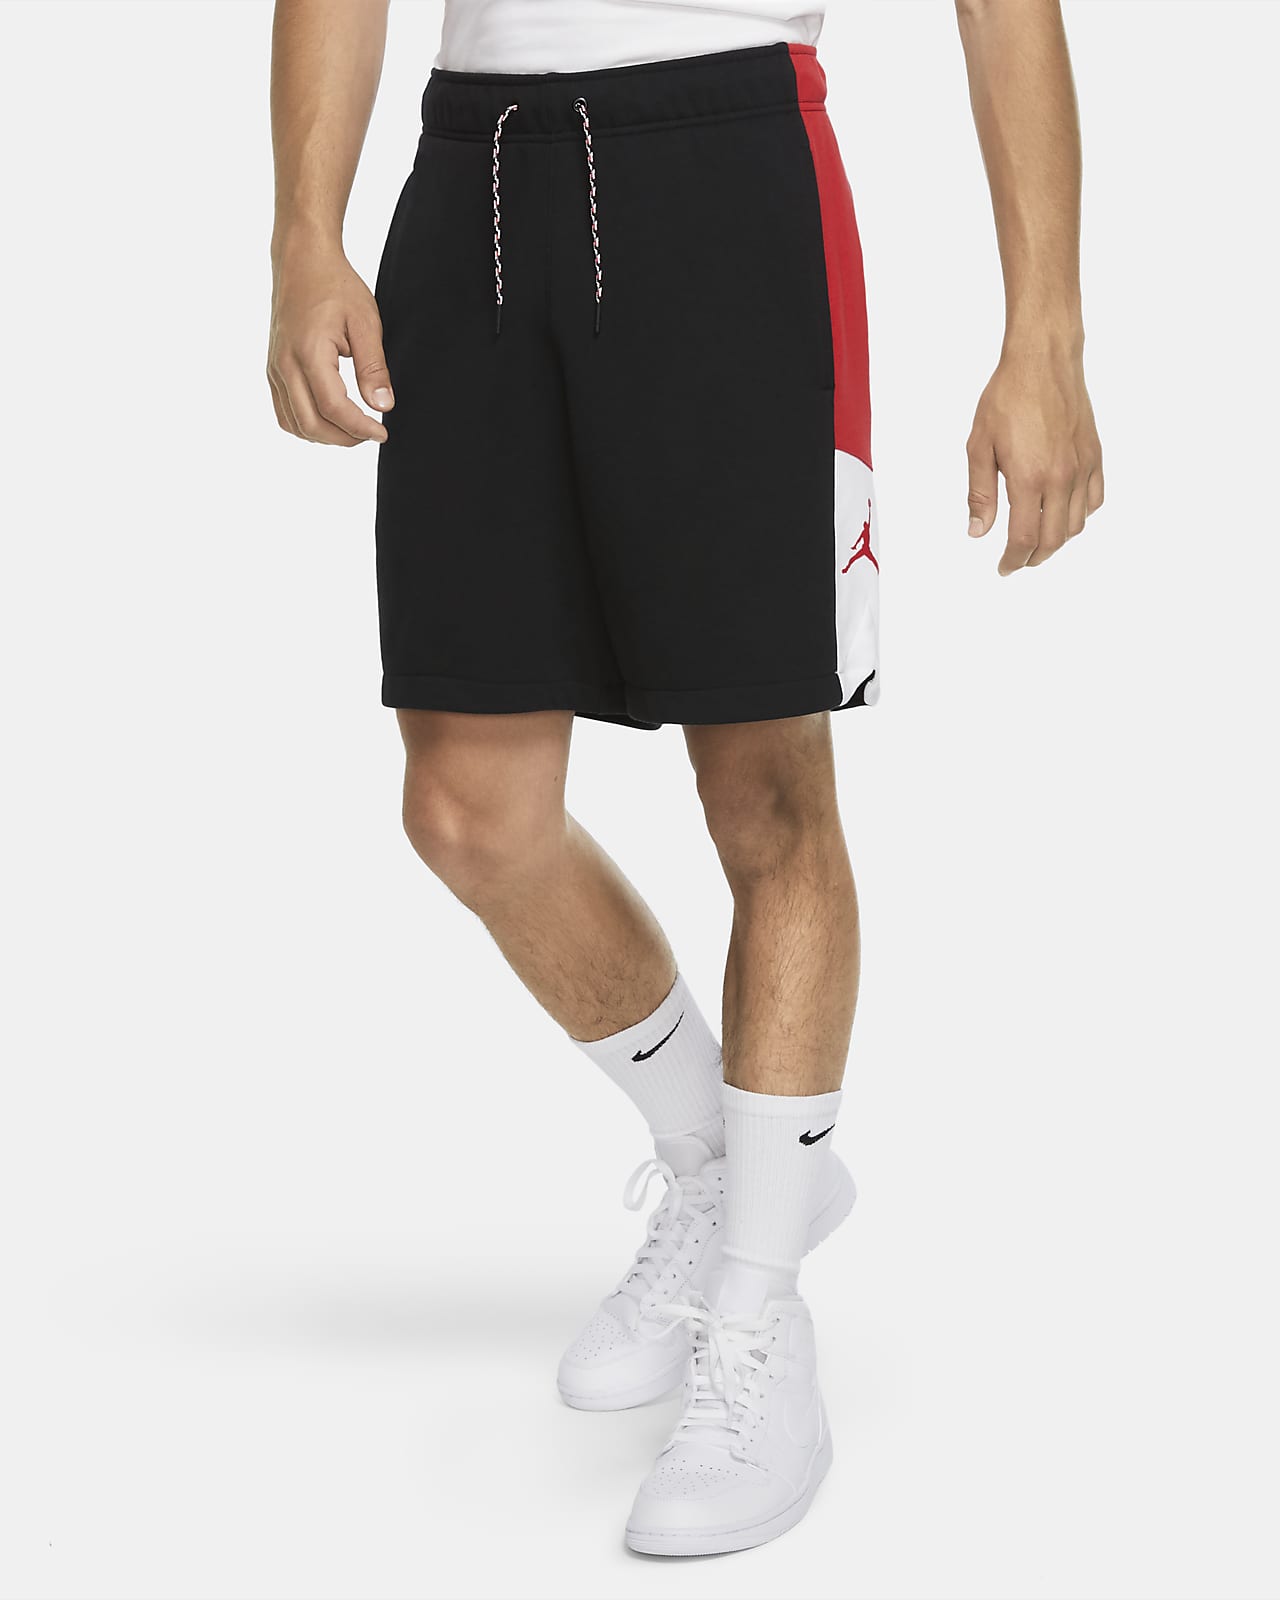 jordan 1 shorts